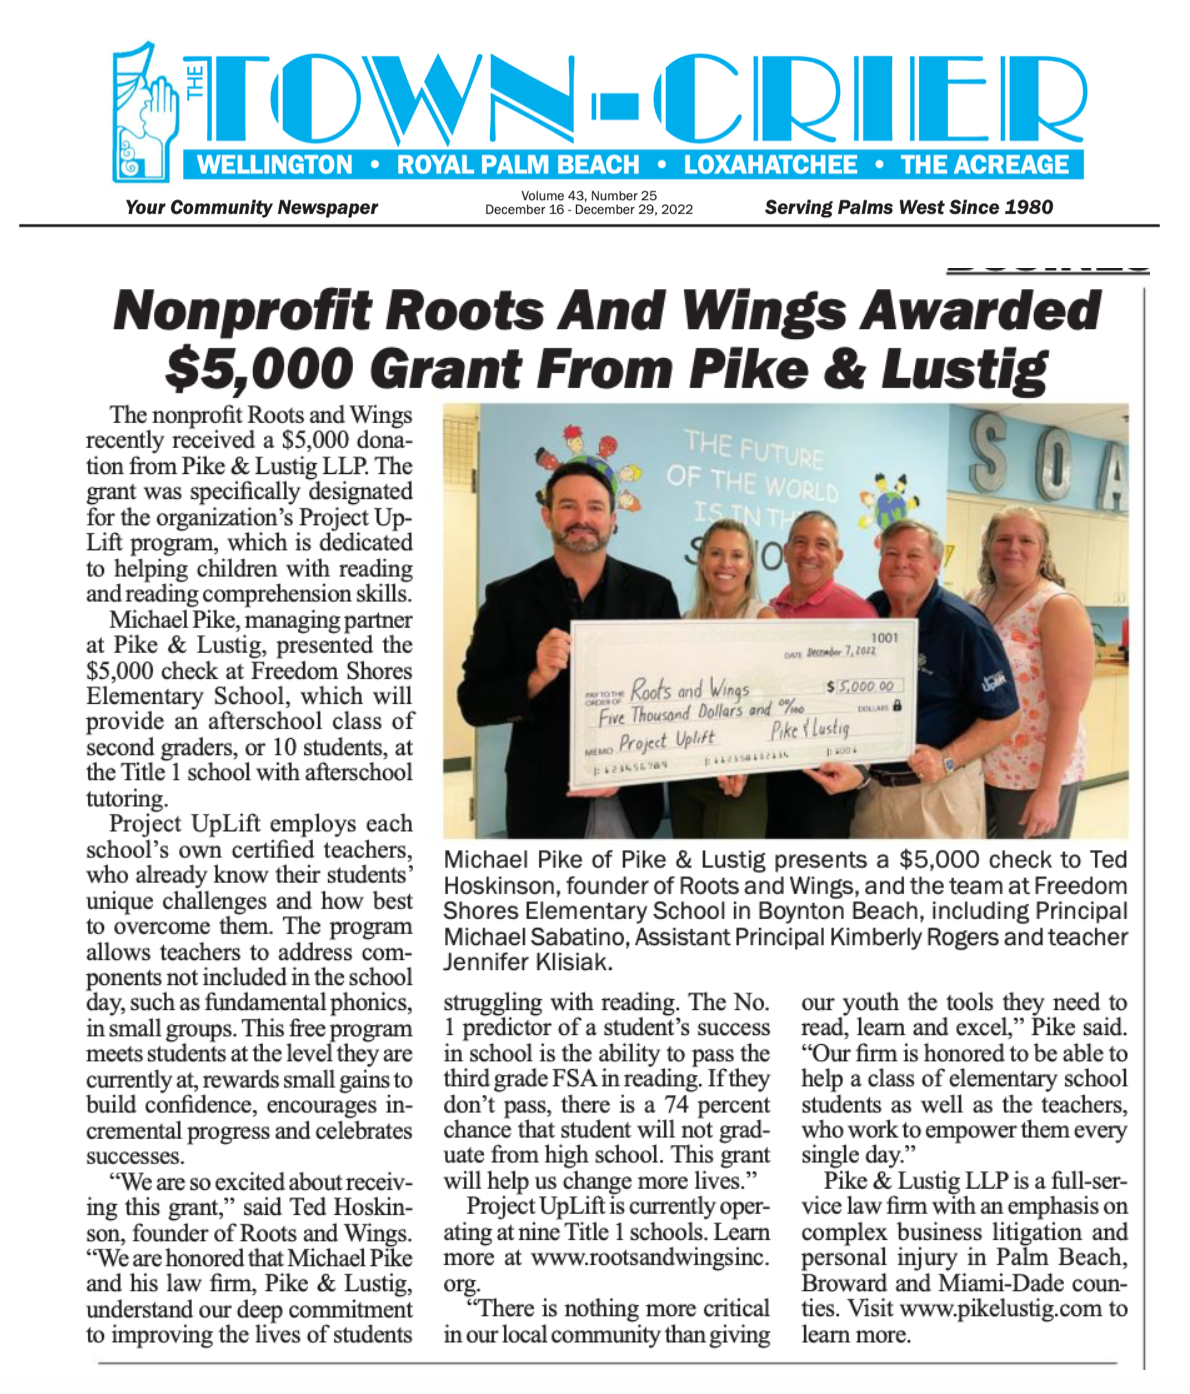 La Organización Sin Ánimo de Lucro Roots & Wings Recibe una Subvención de 5,000 Dólares